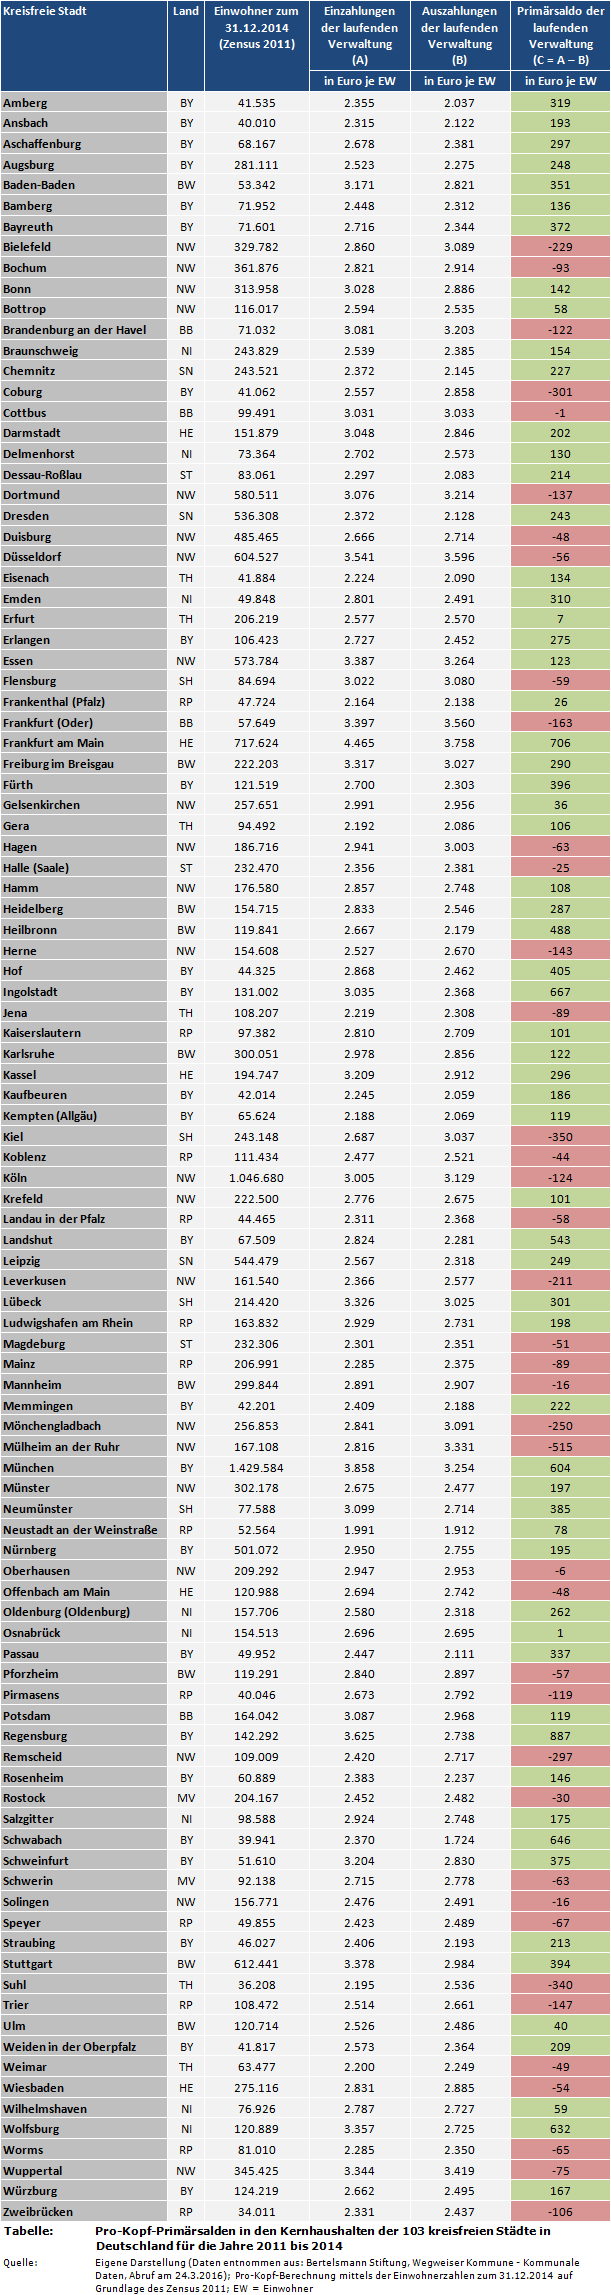 Stadtfinanzen: Pro-Kopf-Primärsalden in den Kernhaushalten der 103 kreisfreien Städte in Deutschland für die Jahre 2011 bis 2014